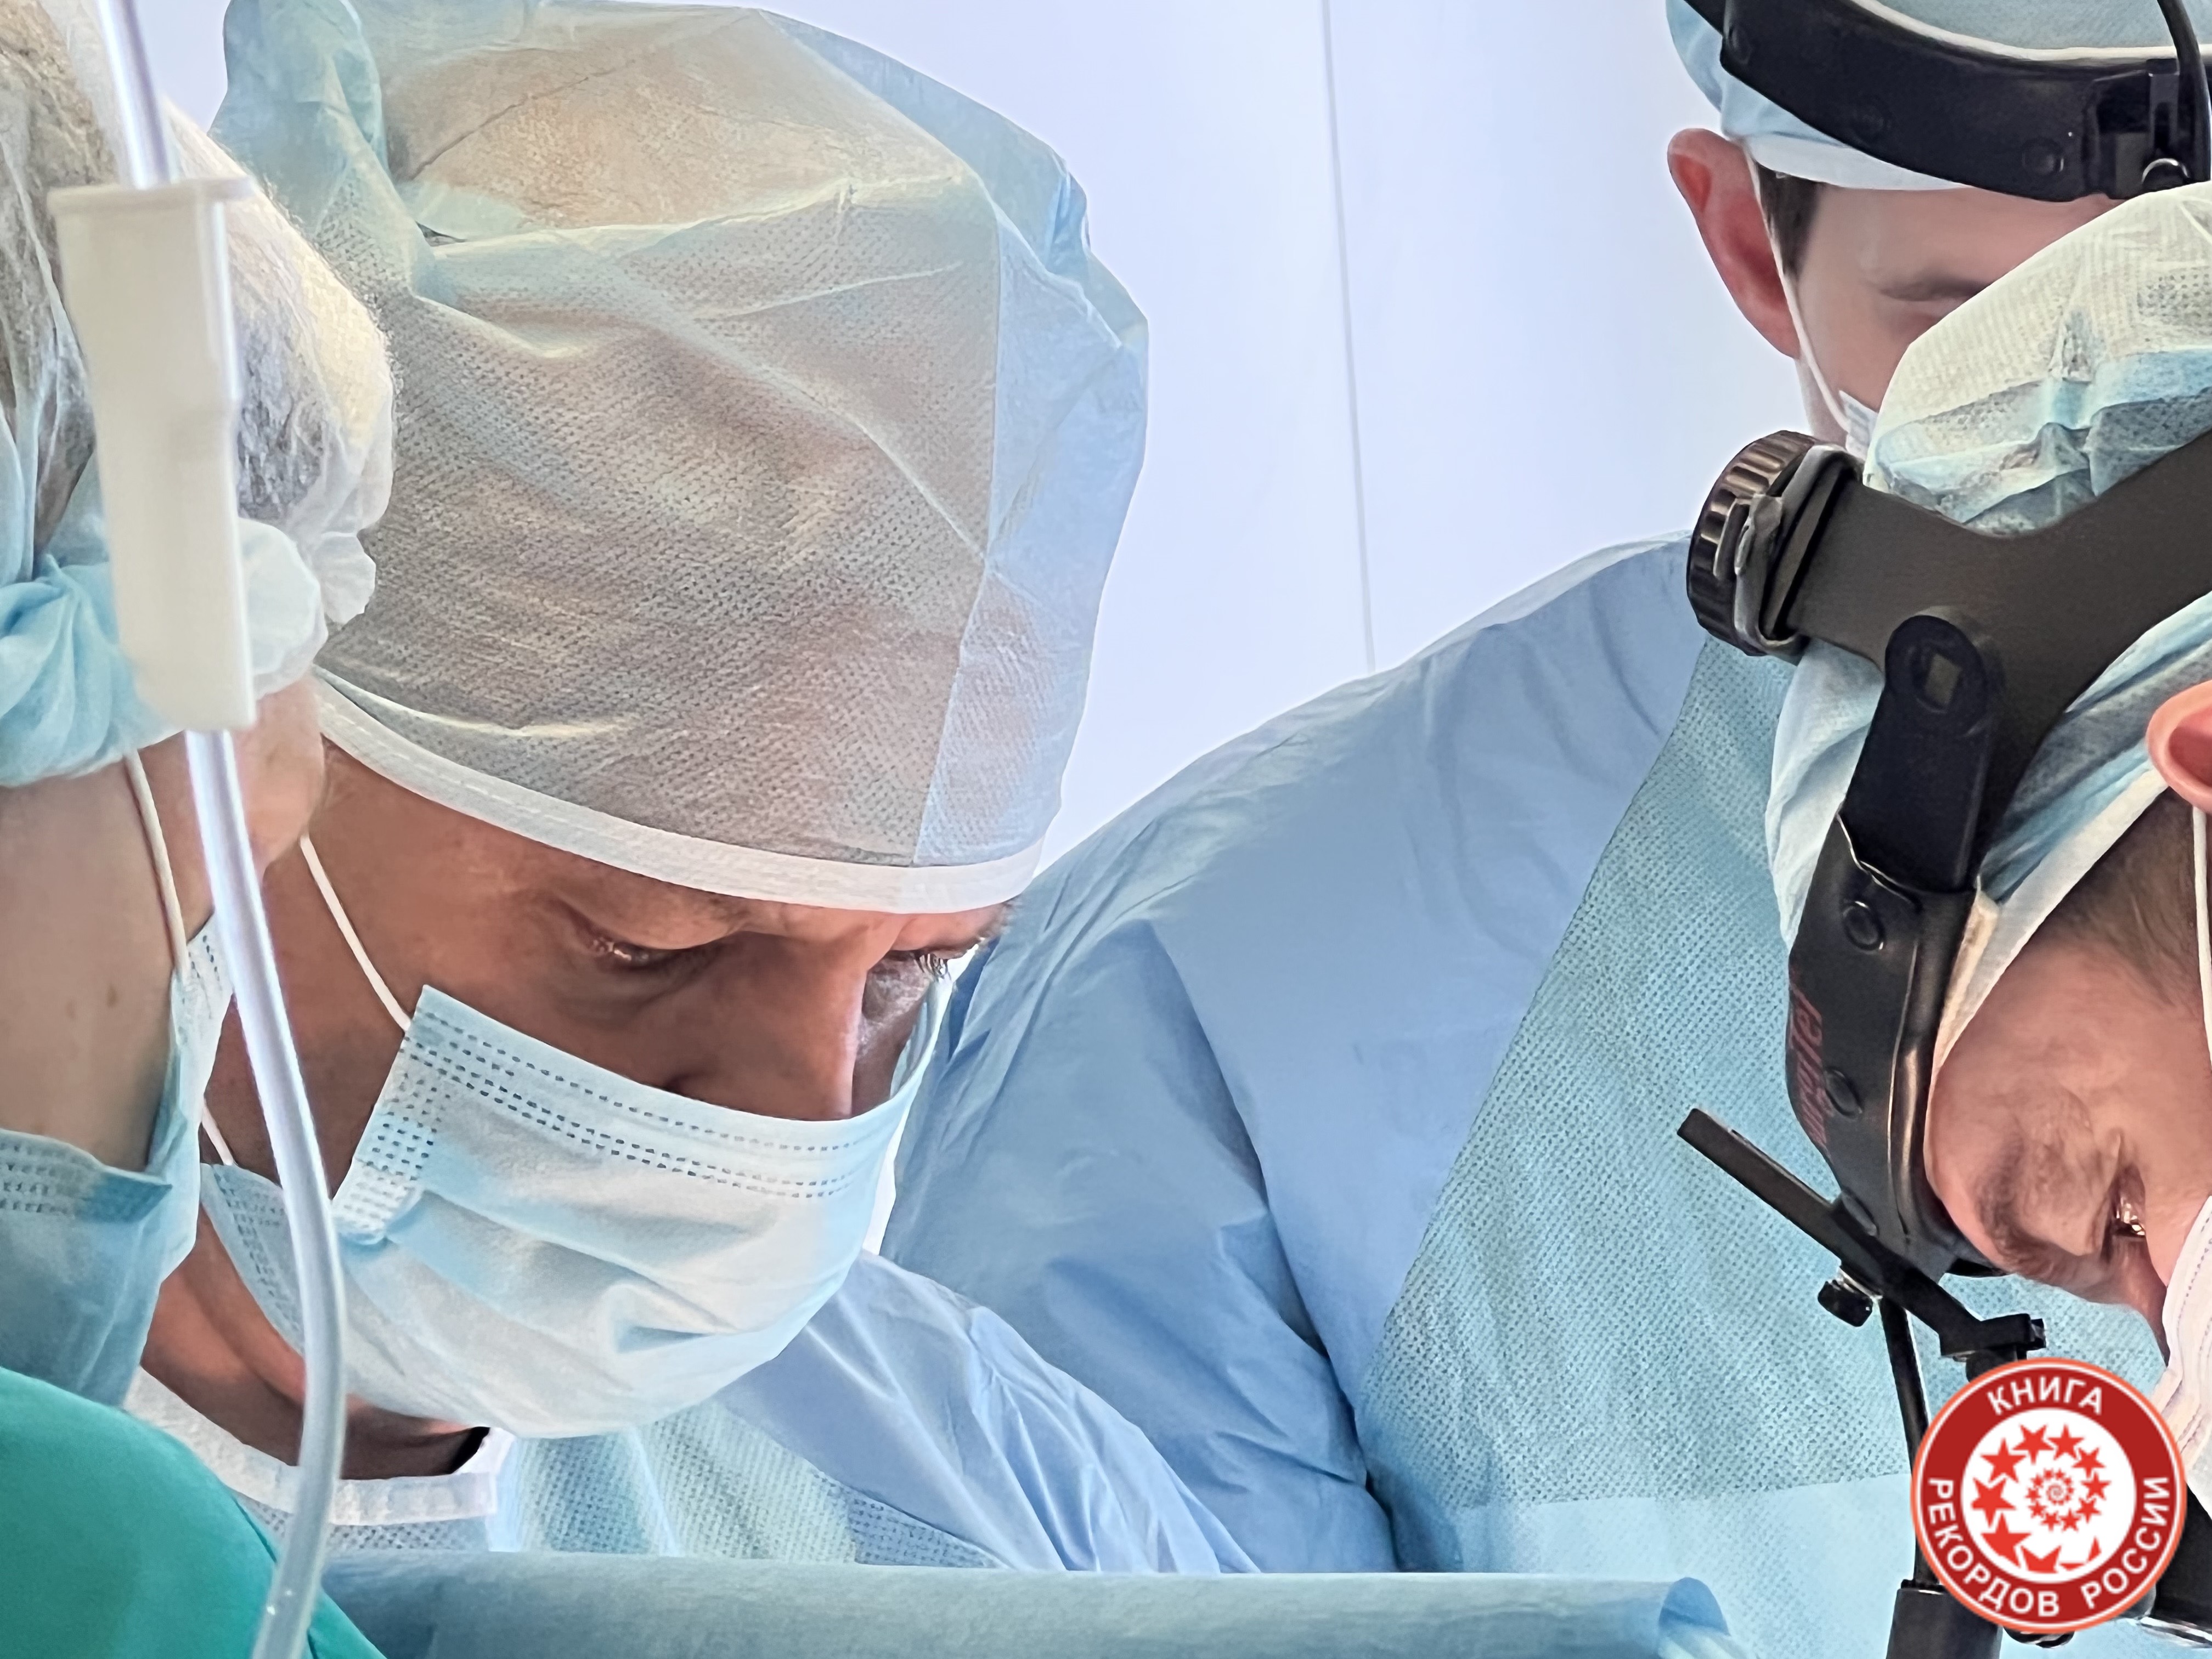 Сосудистая операция "анастомоз плечевой артерии" пациенту наименьшего возраста. Мировой рекорд.